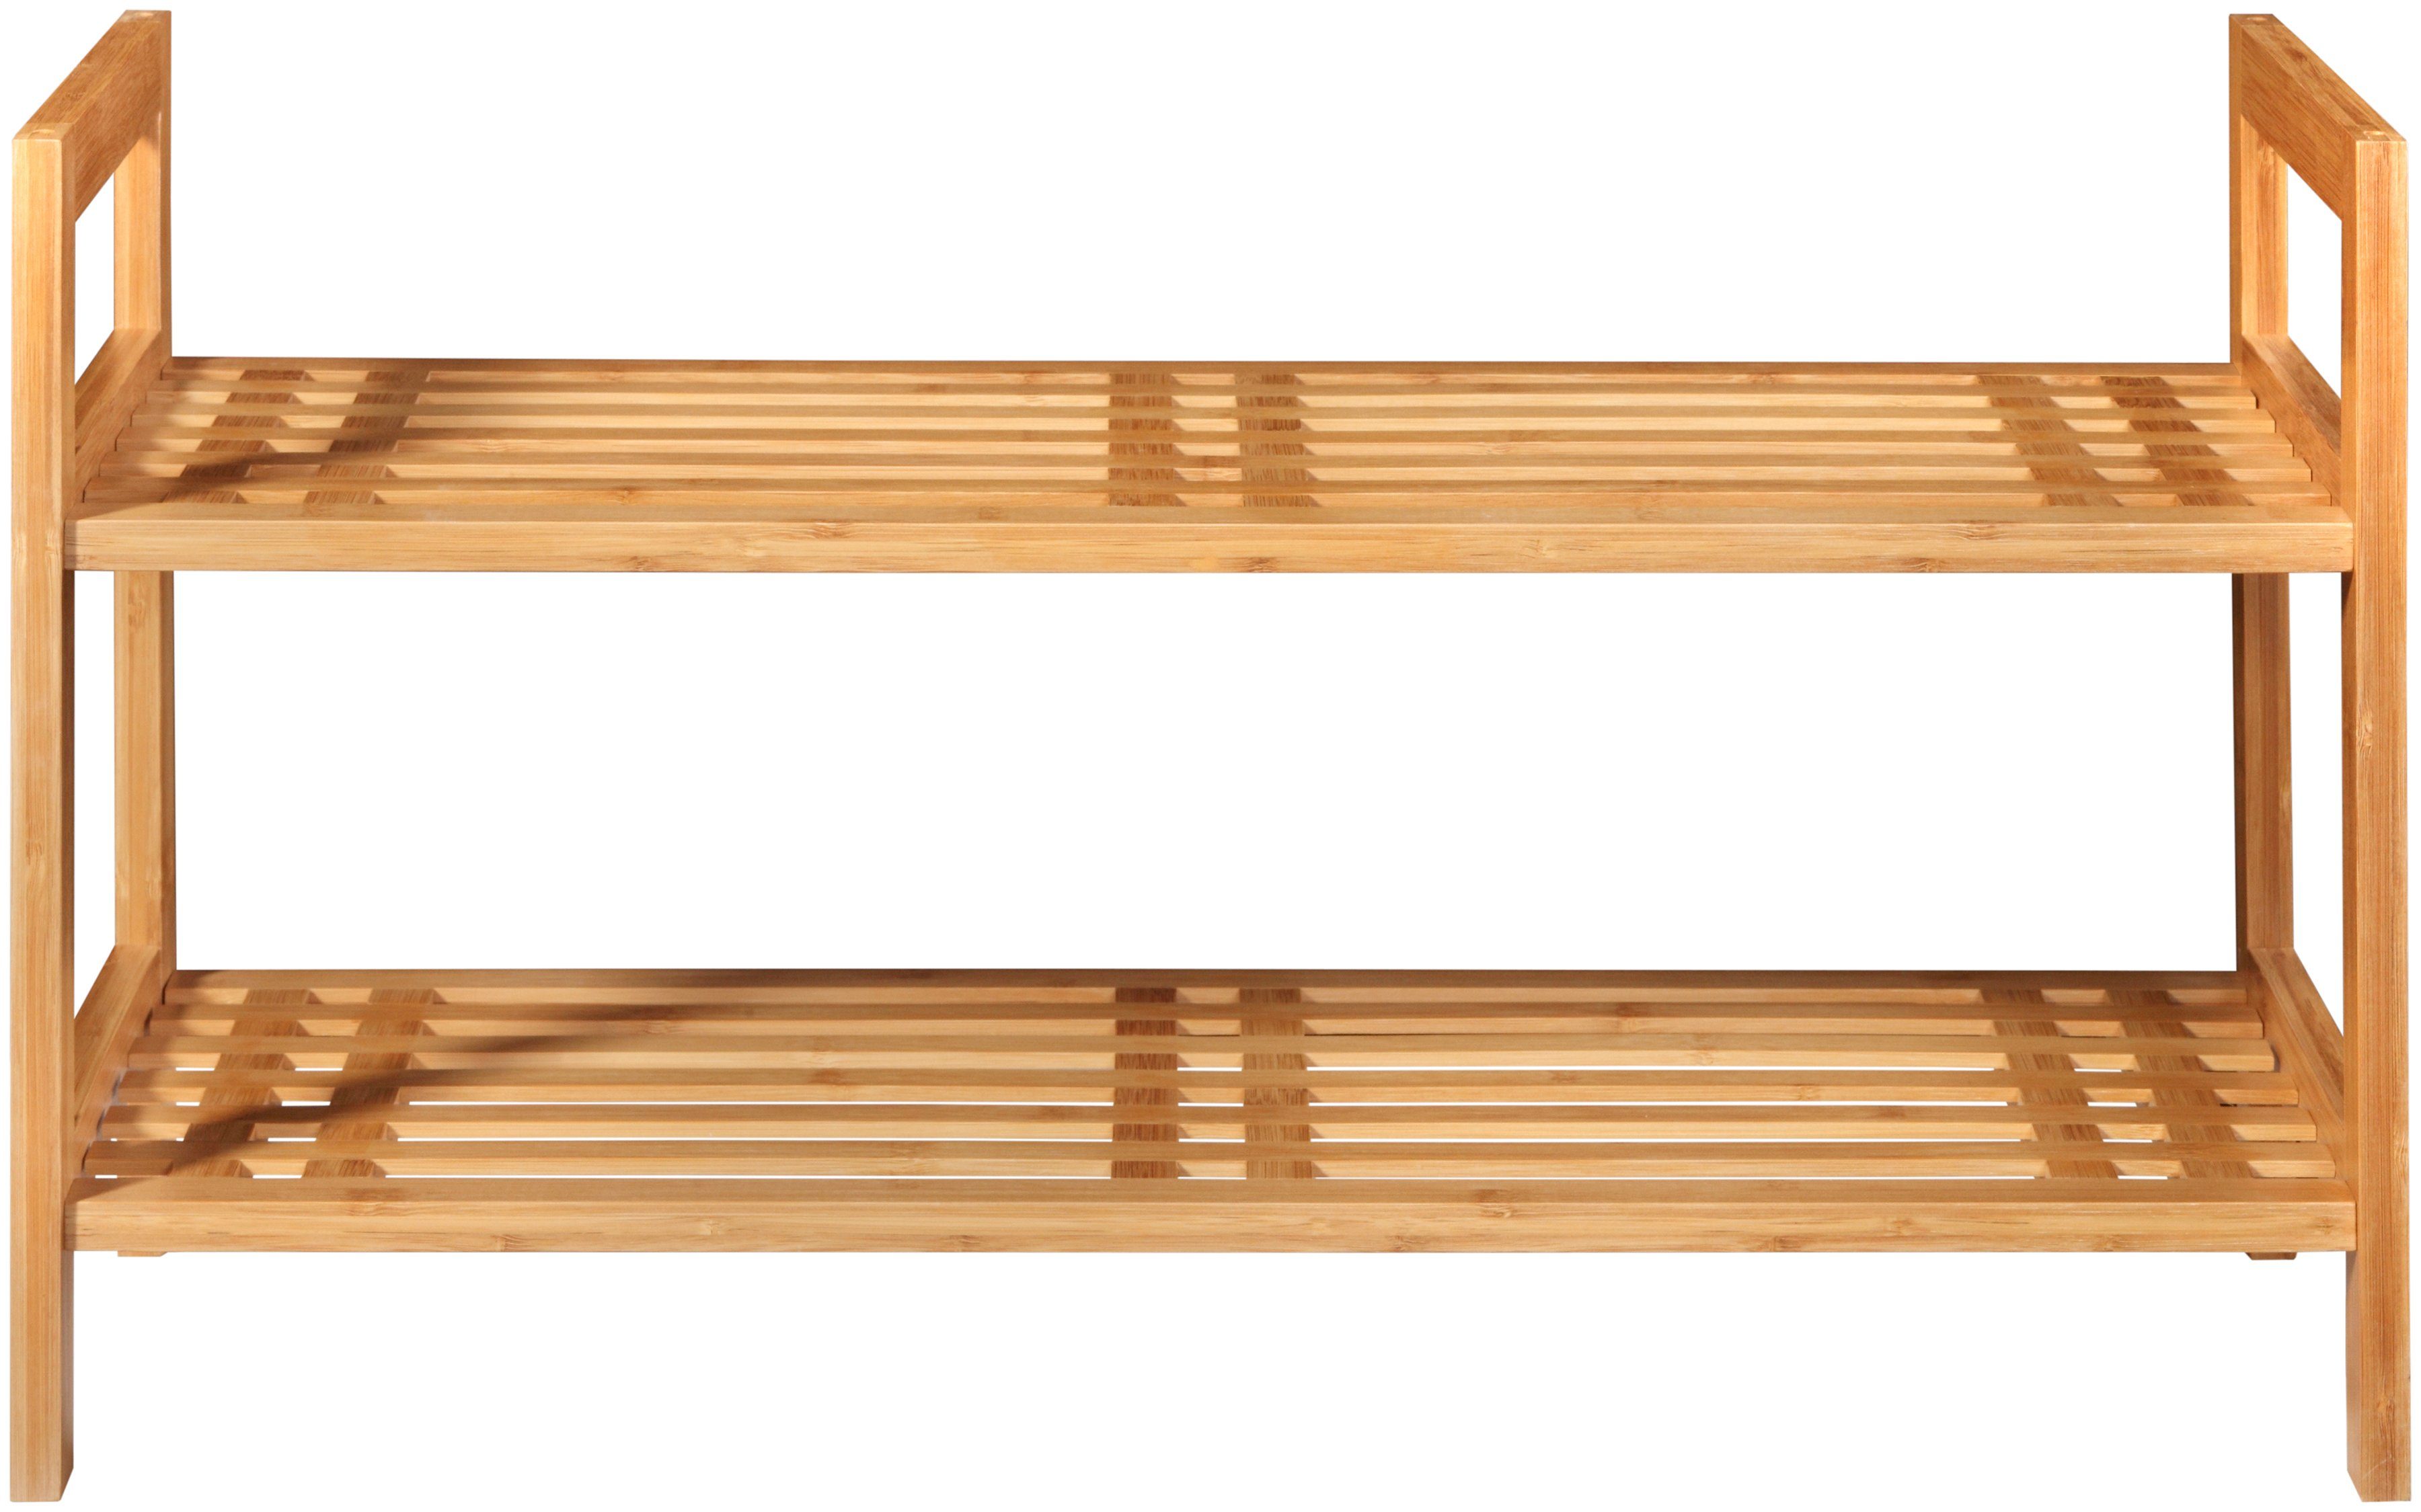 welltime Schuhregal Bambus, Breite 70 cm, Bambus Stapelregal mit Ablagen, 2 aus Regal